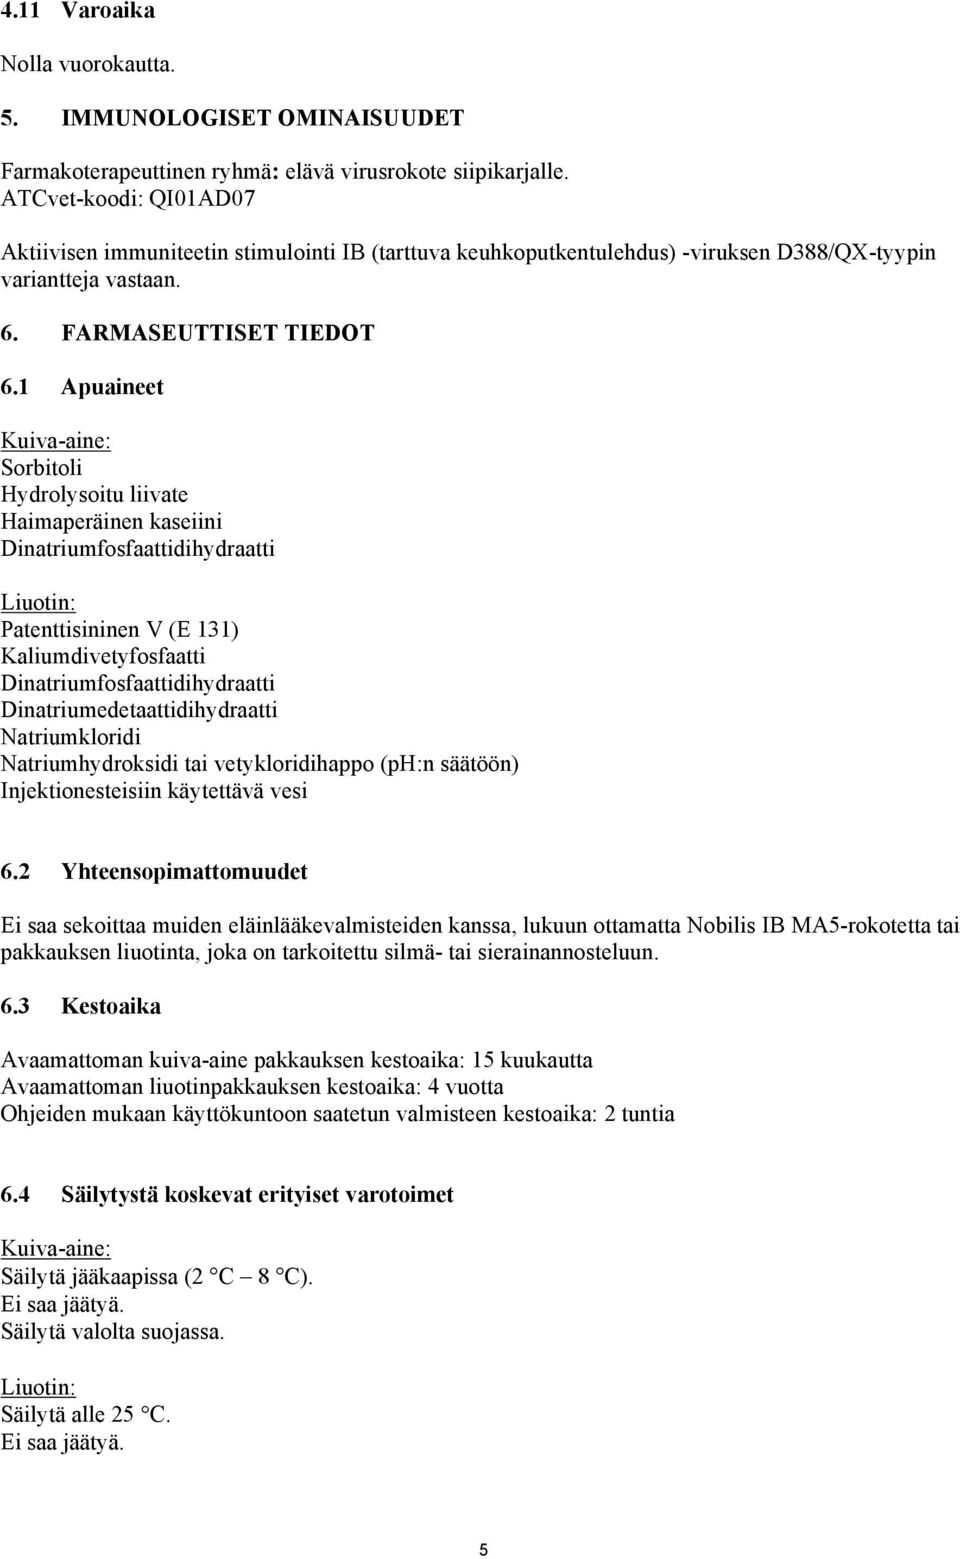 1 Apuaineet Kuiva-aine: Sorbitoli Hydrolysoitu liivate Haimaperäinen kaseiini Dinatriumfosfaattidihydraatti Liuotin: Patenttisininen V (E 131) Kaliumdivetyfosfaatti Dinatriumfosfaattidihydraatti